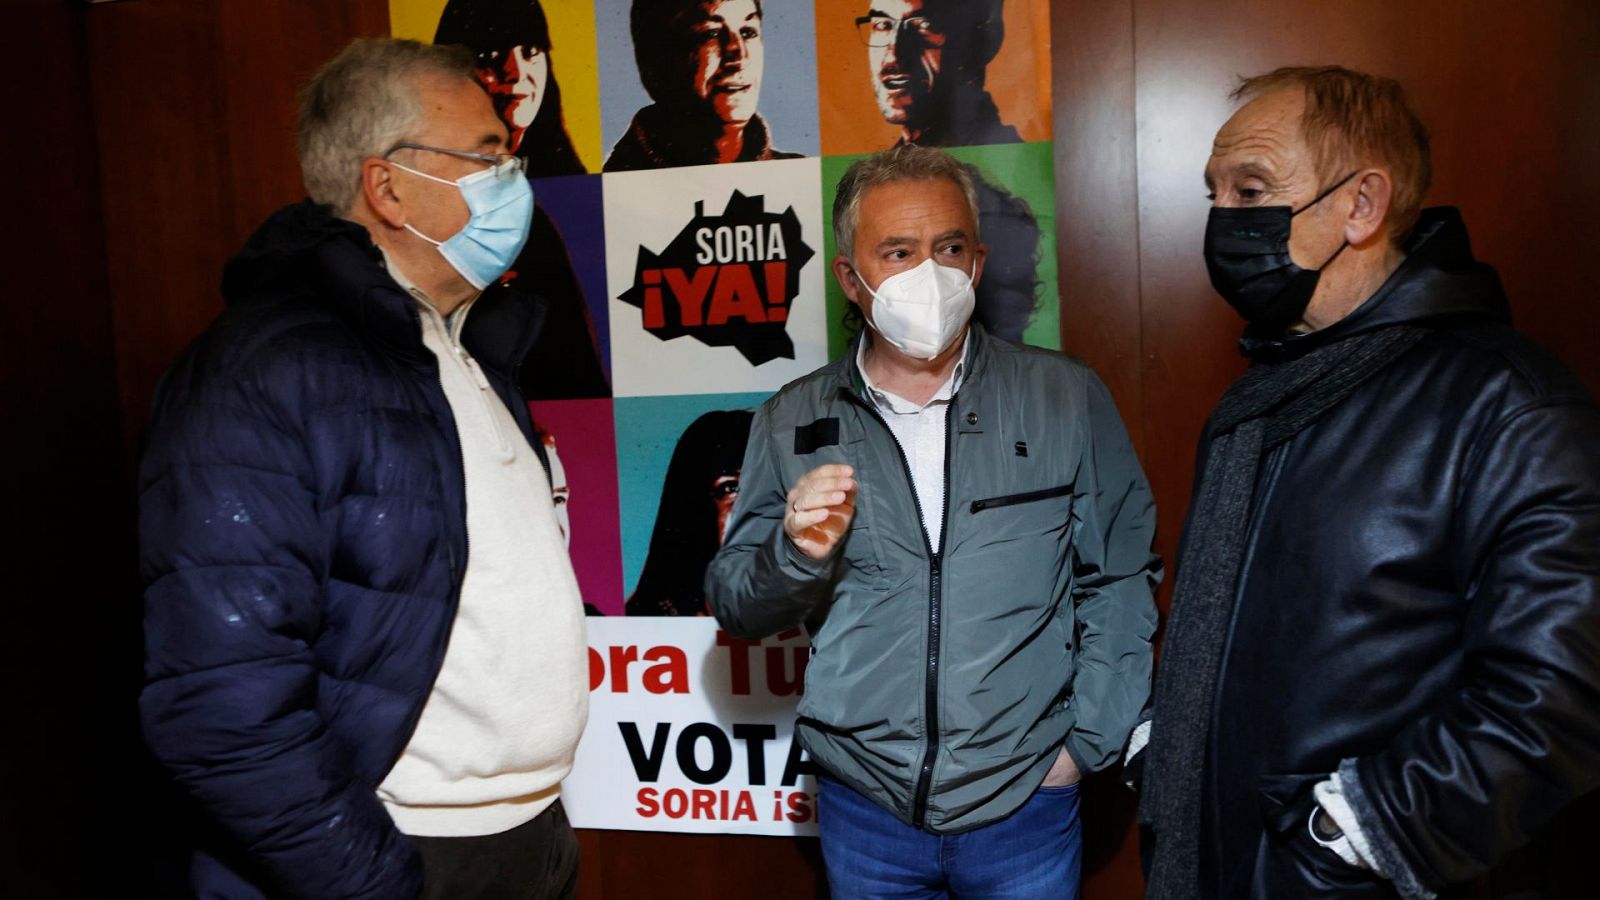 Elecciones Castilla y León 2022:Ceña ve en el éxito de Soria ¡Ya! un "toque de atención"